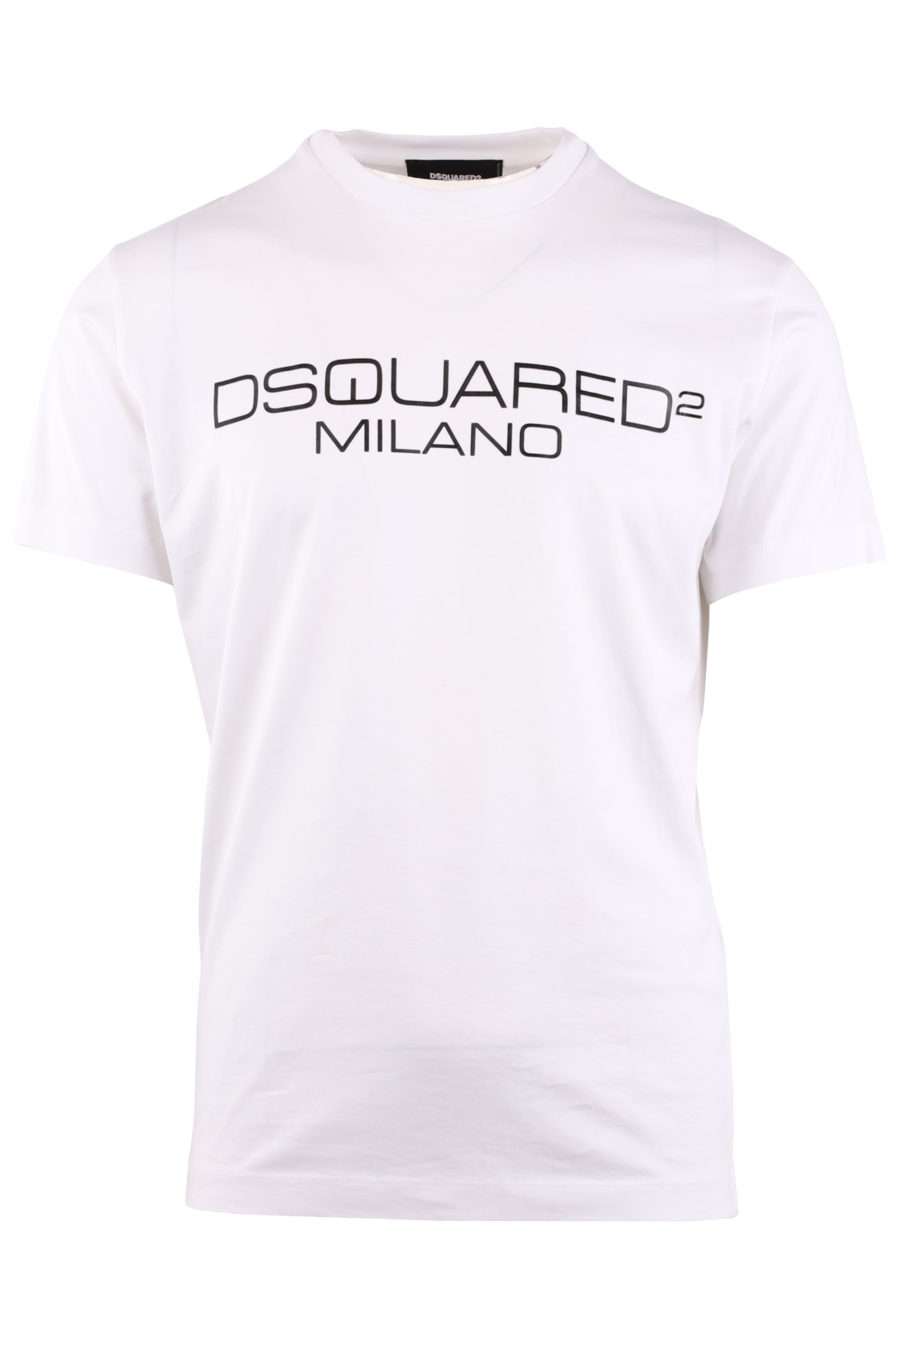 Camiseta blanca con logotipo "Milano" - a55ed1dc266649eb872ca14a196e45ef9990924a